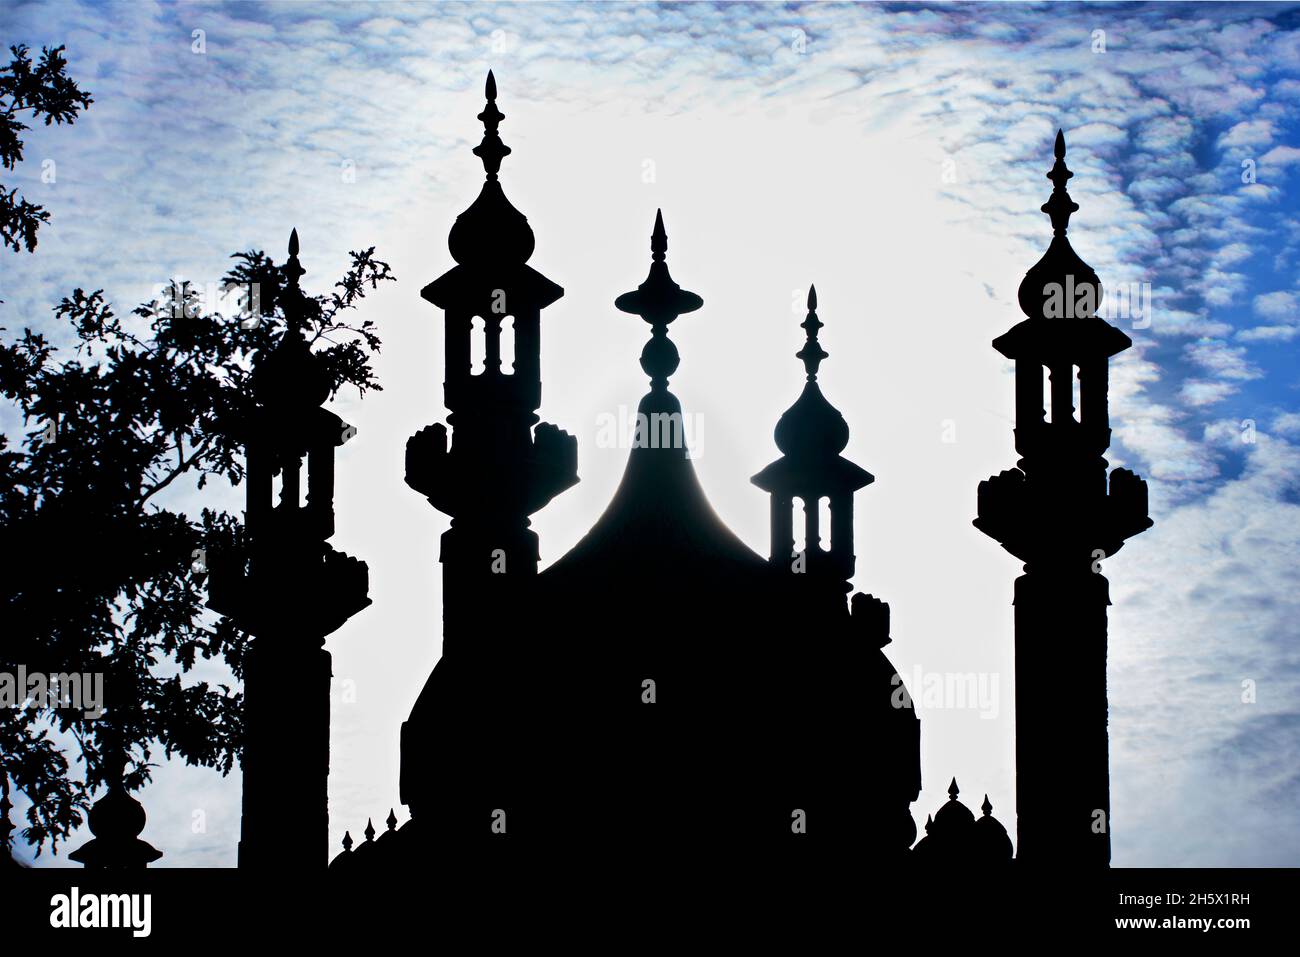 Die indisch inspirierte Architektur des georgianischen Royal Pavilion, Brighton, East Sussex, England, Großbritannien. Schattenkuppel und Minarette. Indo-Saracenic Revival. Stockfoto